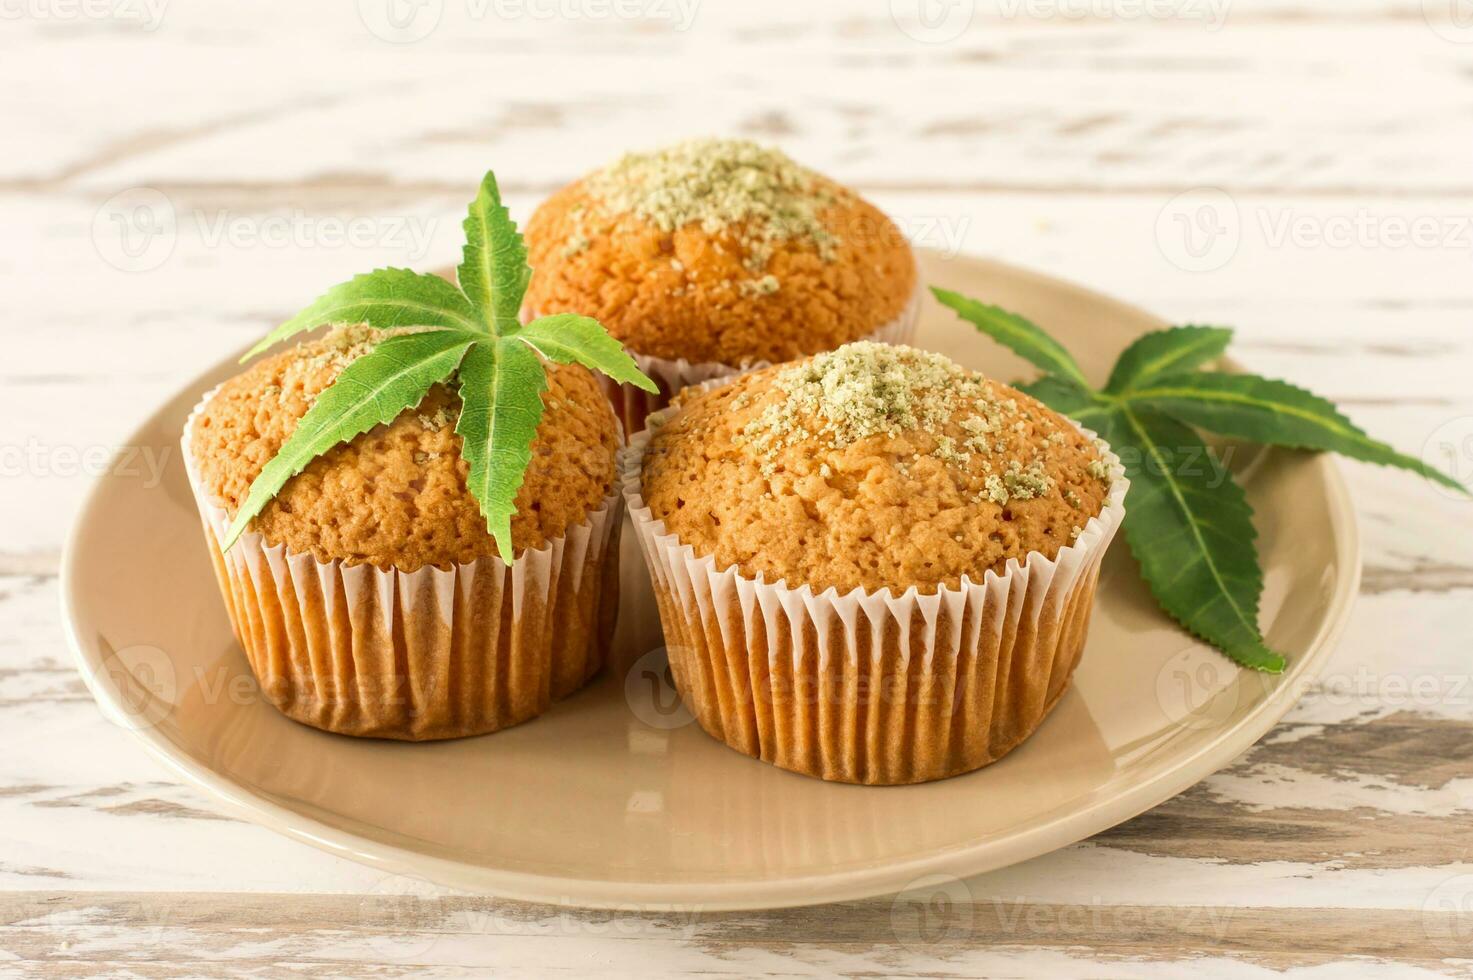 koekje met marihuana. smakelijk koekje muffins met hennep onkruid cbd. medisch marihuana verdovende middelen in voedsel nagerecht, ganja legalisatie. foto